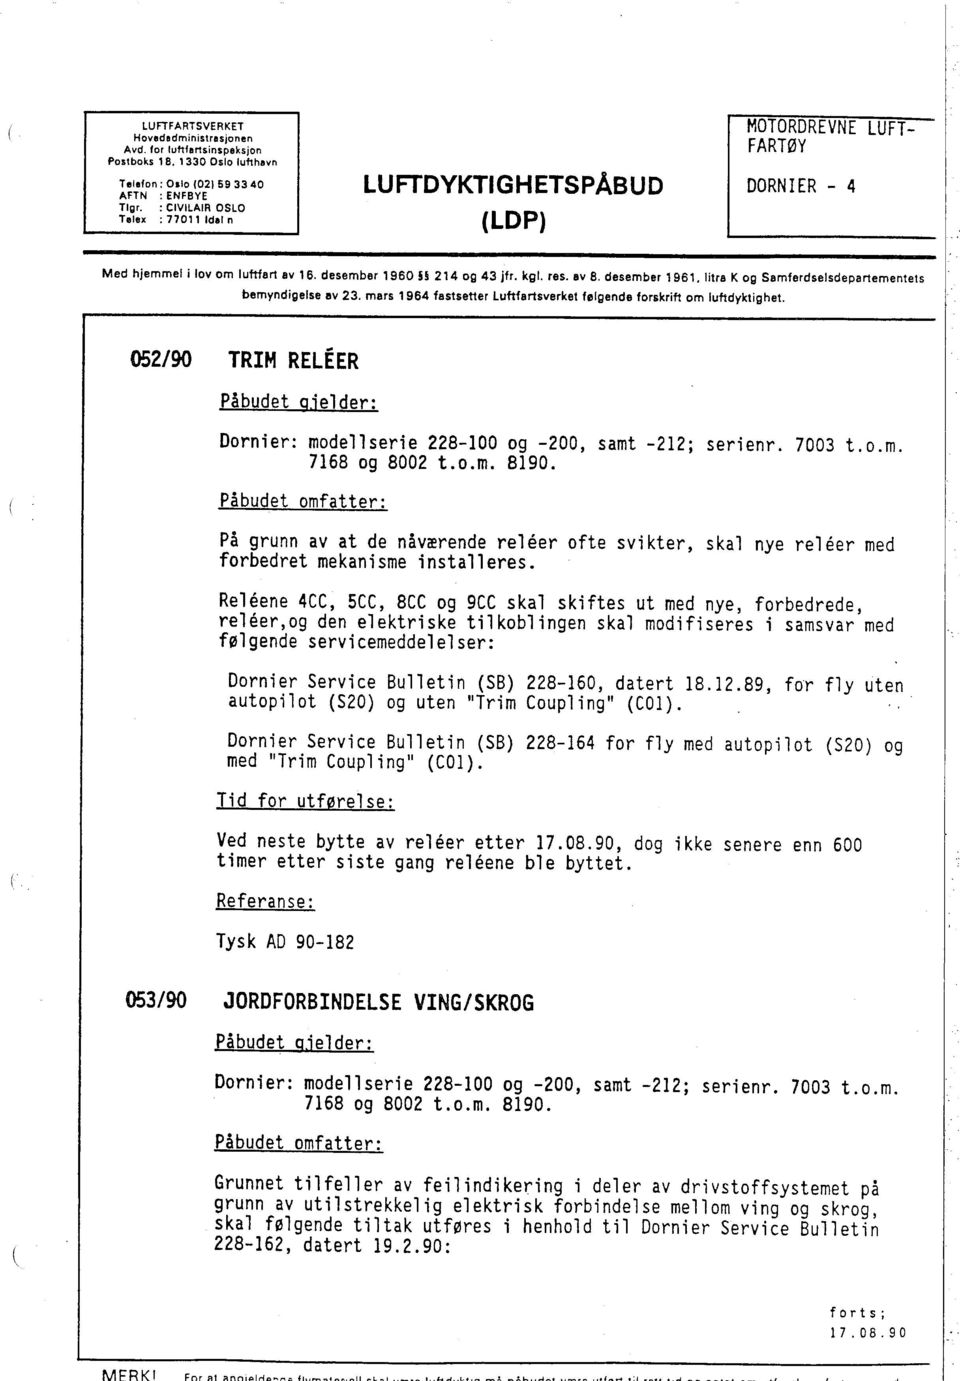 I tra K og Samferdselsdepartementets bemyndigelse liv 23. mars 1964 fastsetter luftfartsverket følgende forskrift om luftdyktighet.